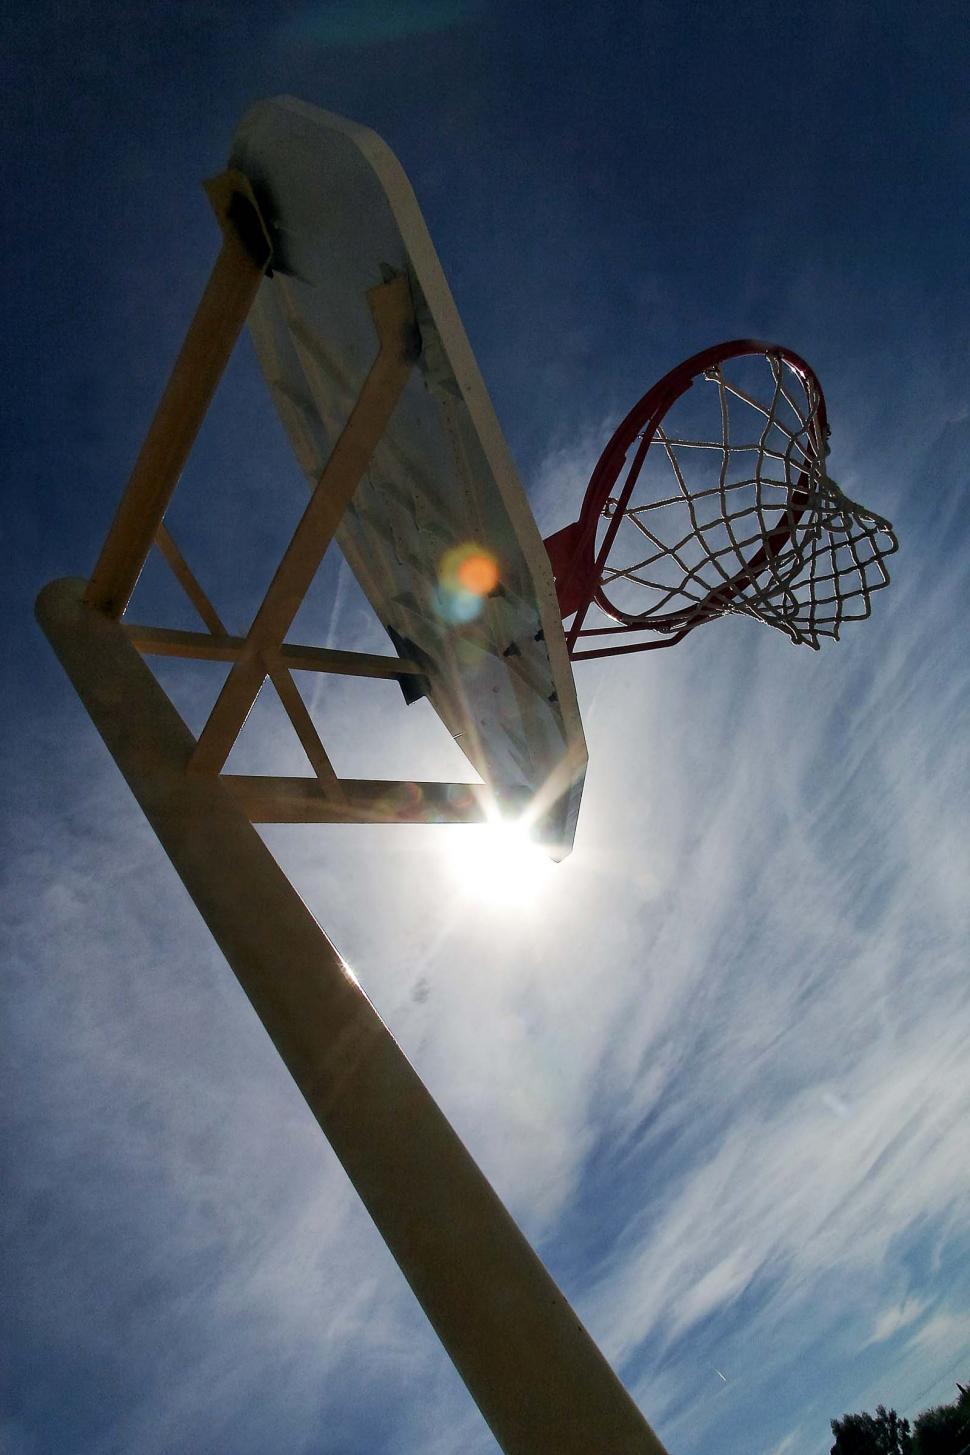 Free Image of basketball hoops net pole sun flare sports backboard basket rim silhouette clouds 